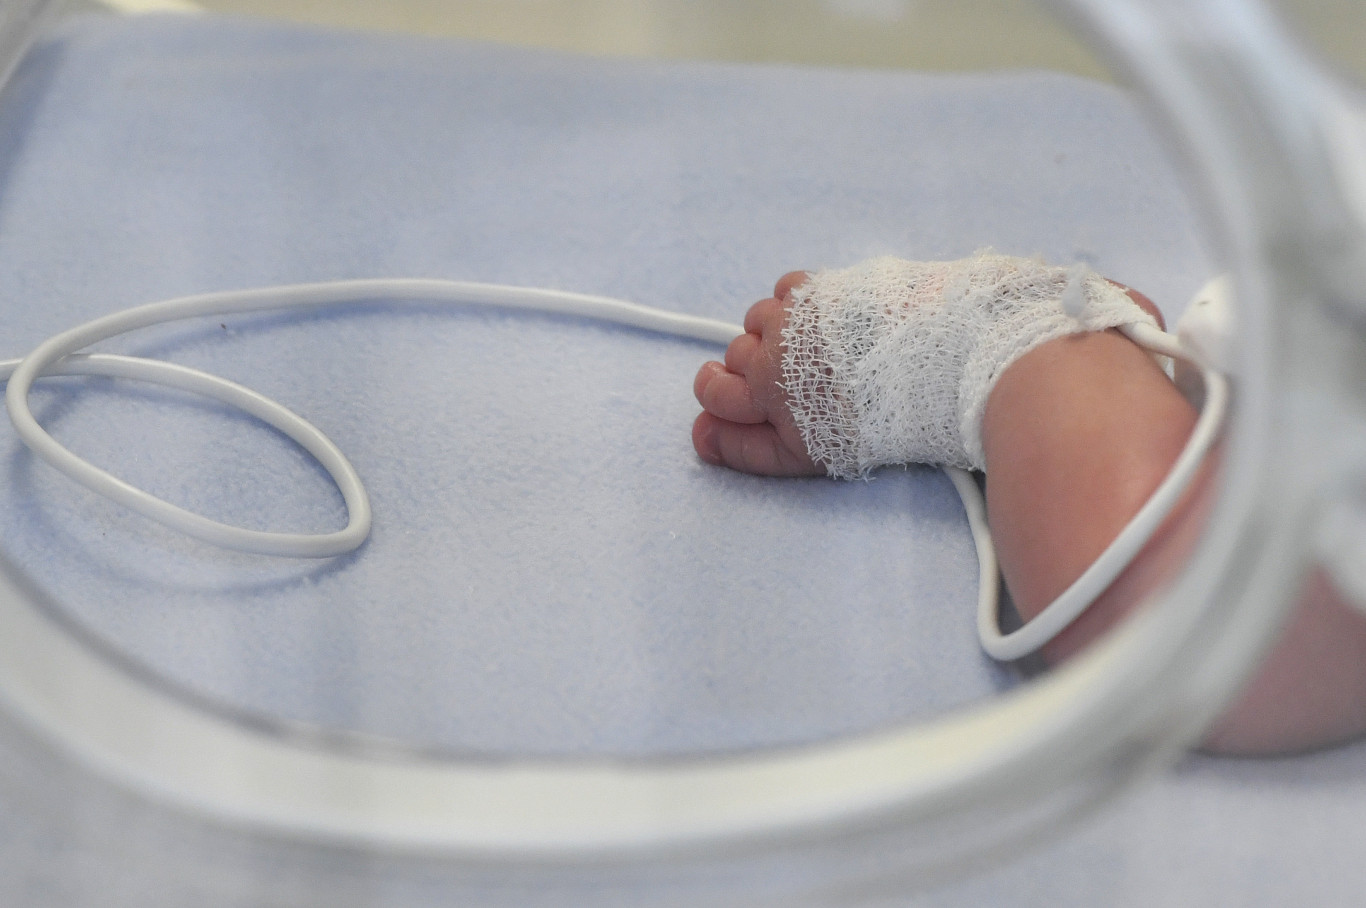 Népszava: 30 magára hagyott csecsemőt gondoznak a miskolci kórházban